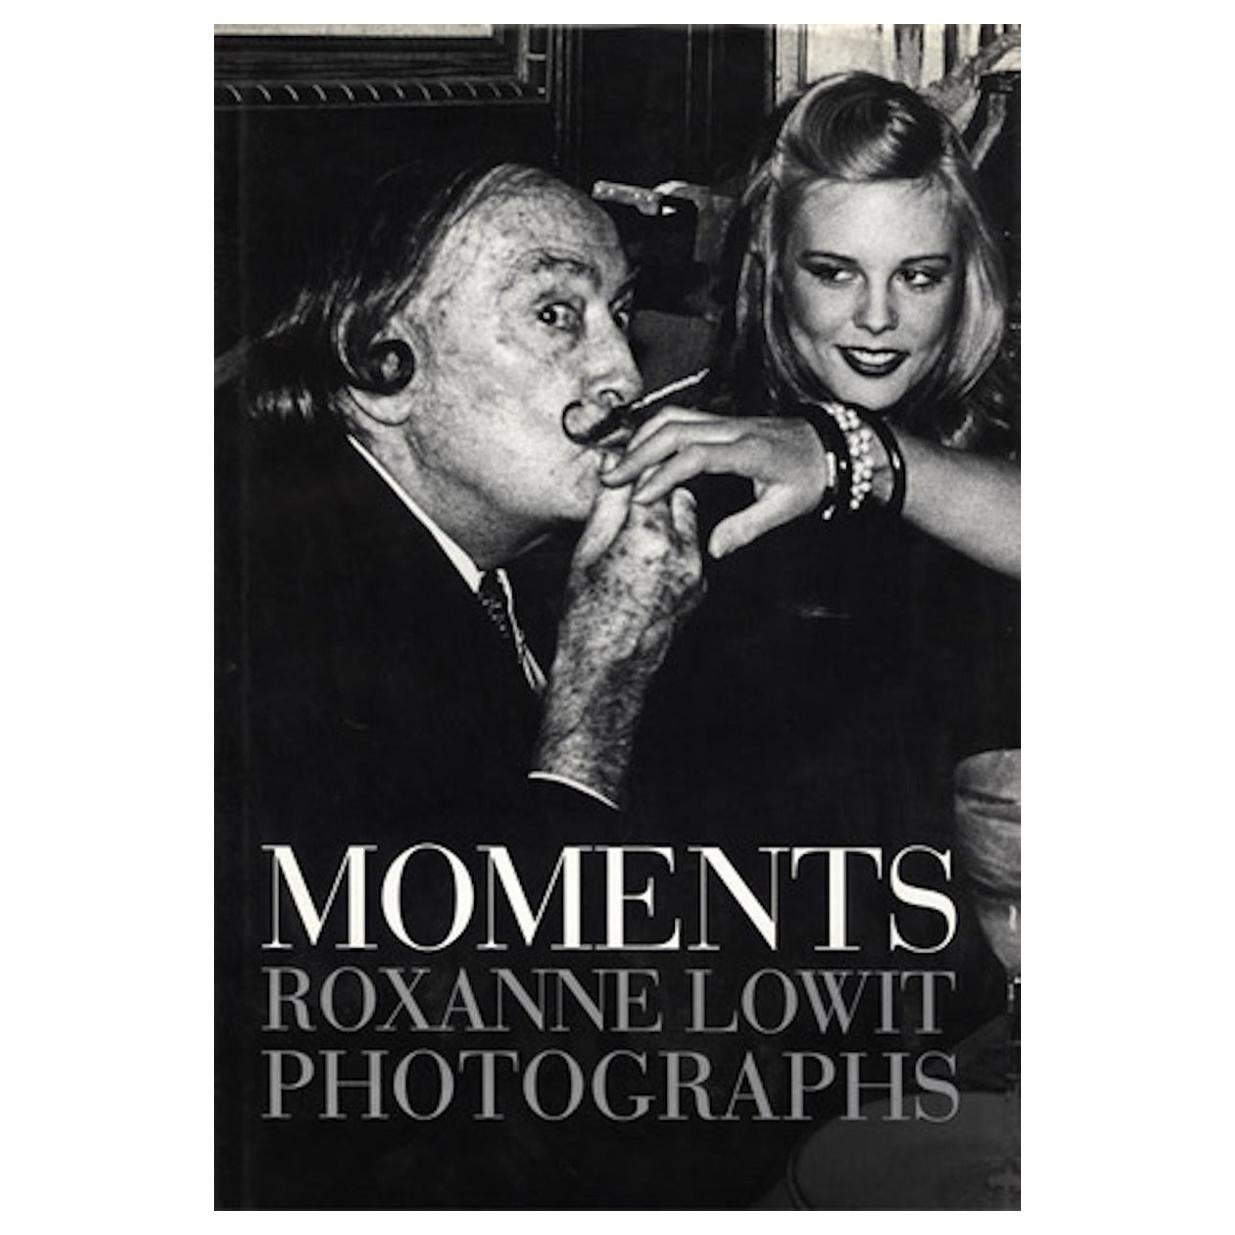 Moments, photographies de Roxanne Lowit, 1992